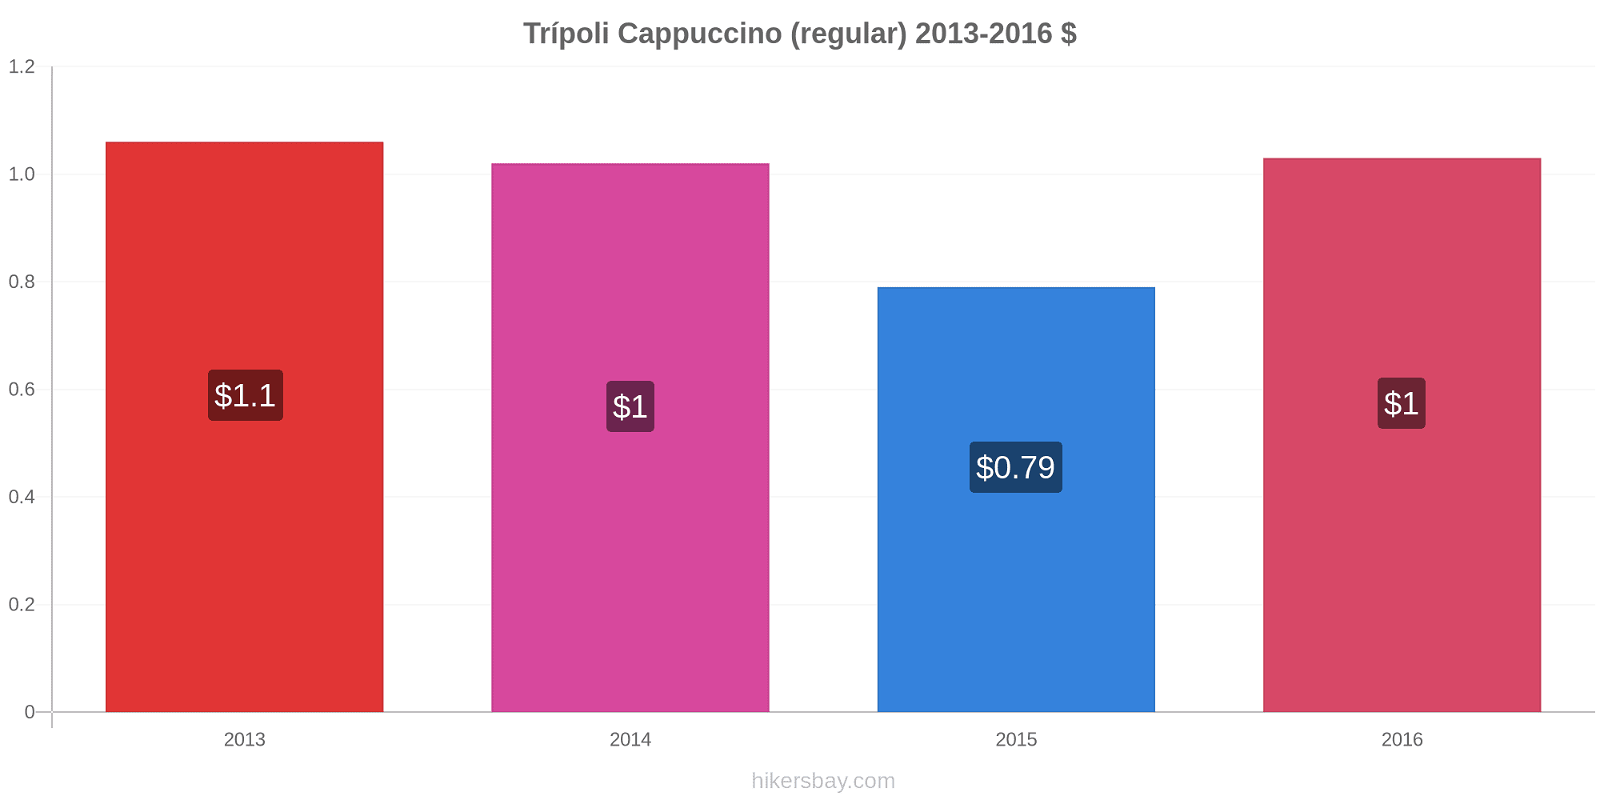 Trípoli variação de preço Capuccino (regular) hikersbay.com